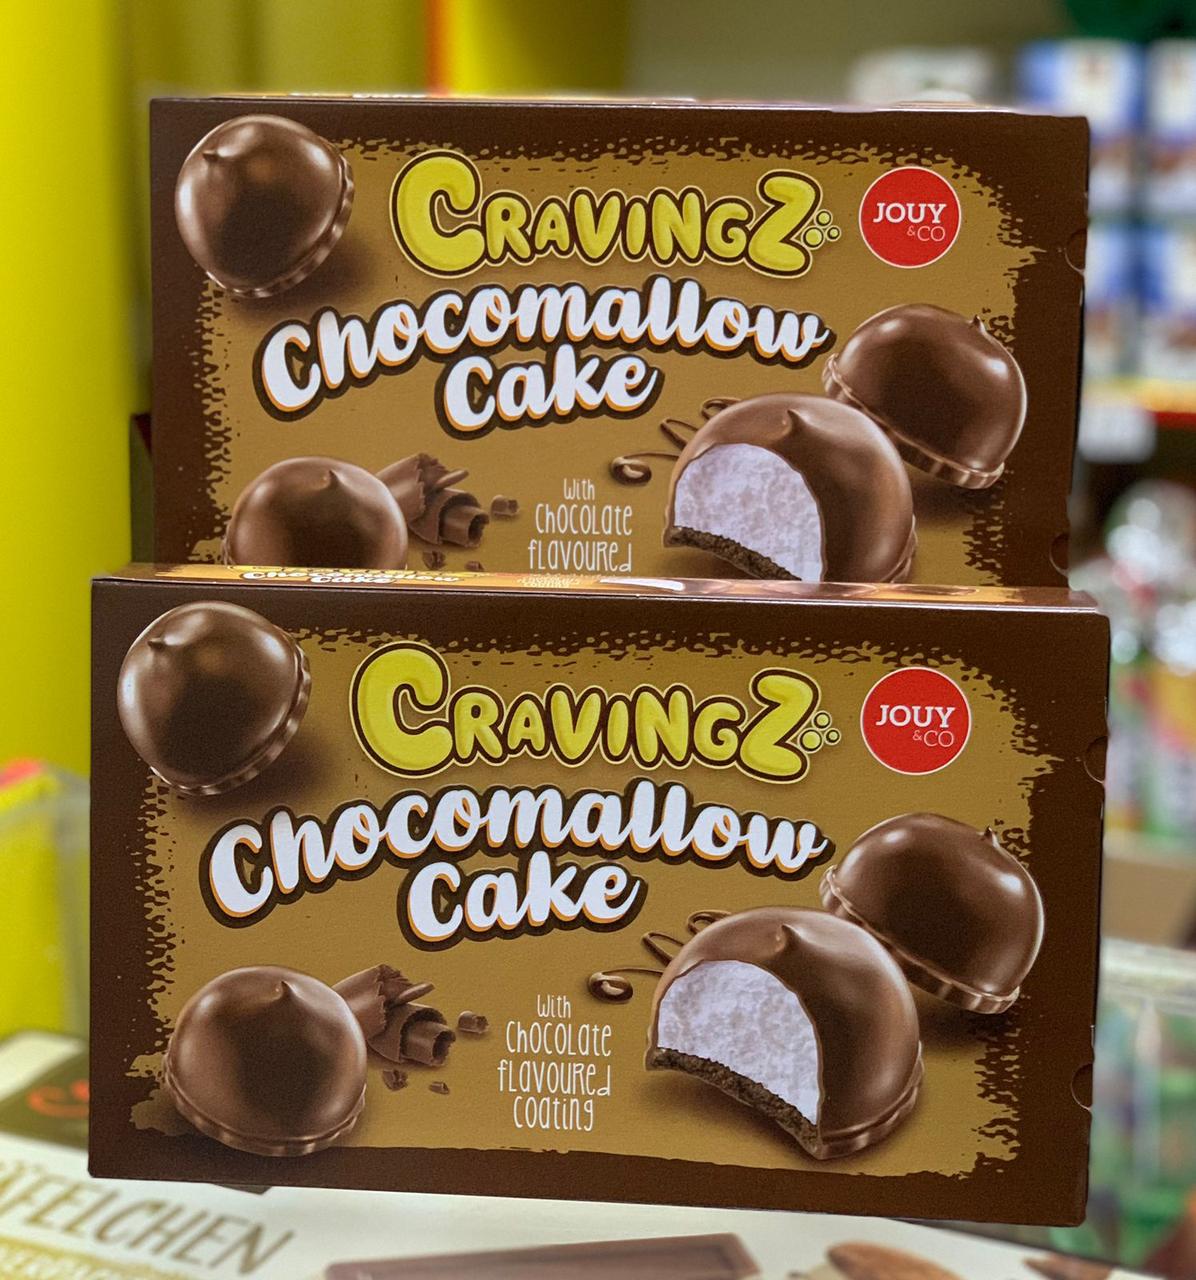 Кексы - суфле в шоколаде Chocomalow cake Craving  (Германия)